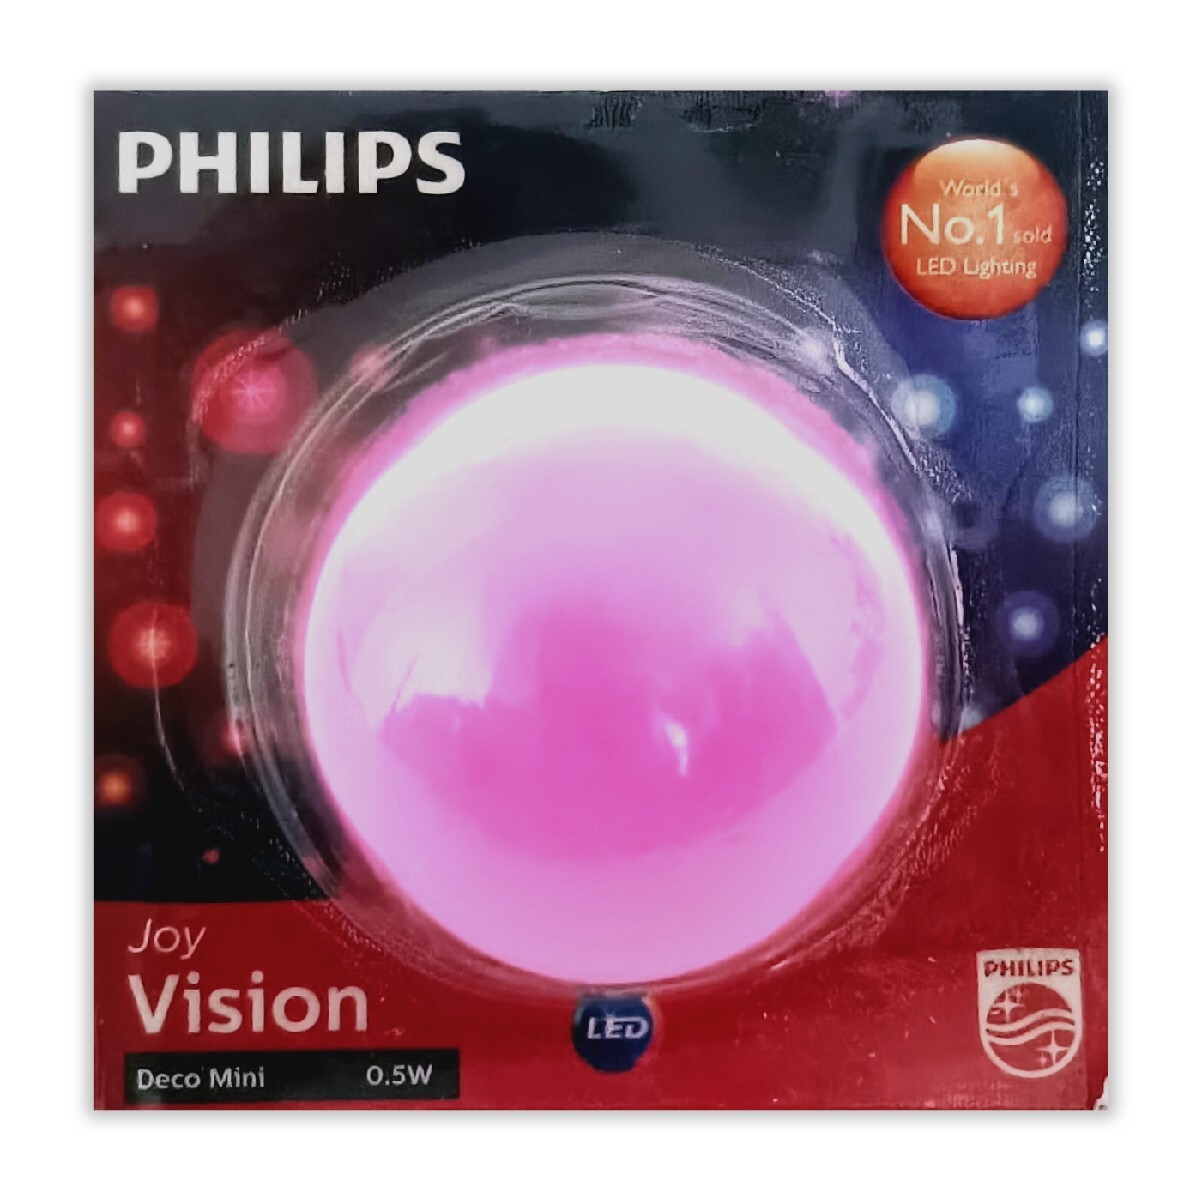 Phlips Deco LED Lamp 0.5W B22 Pink